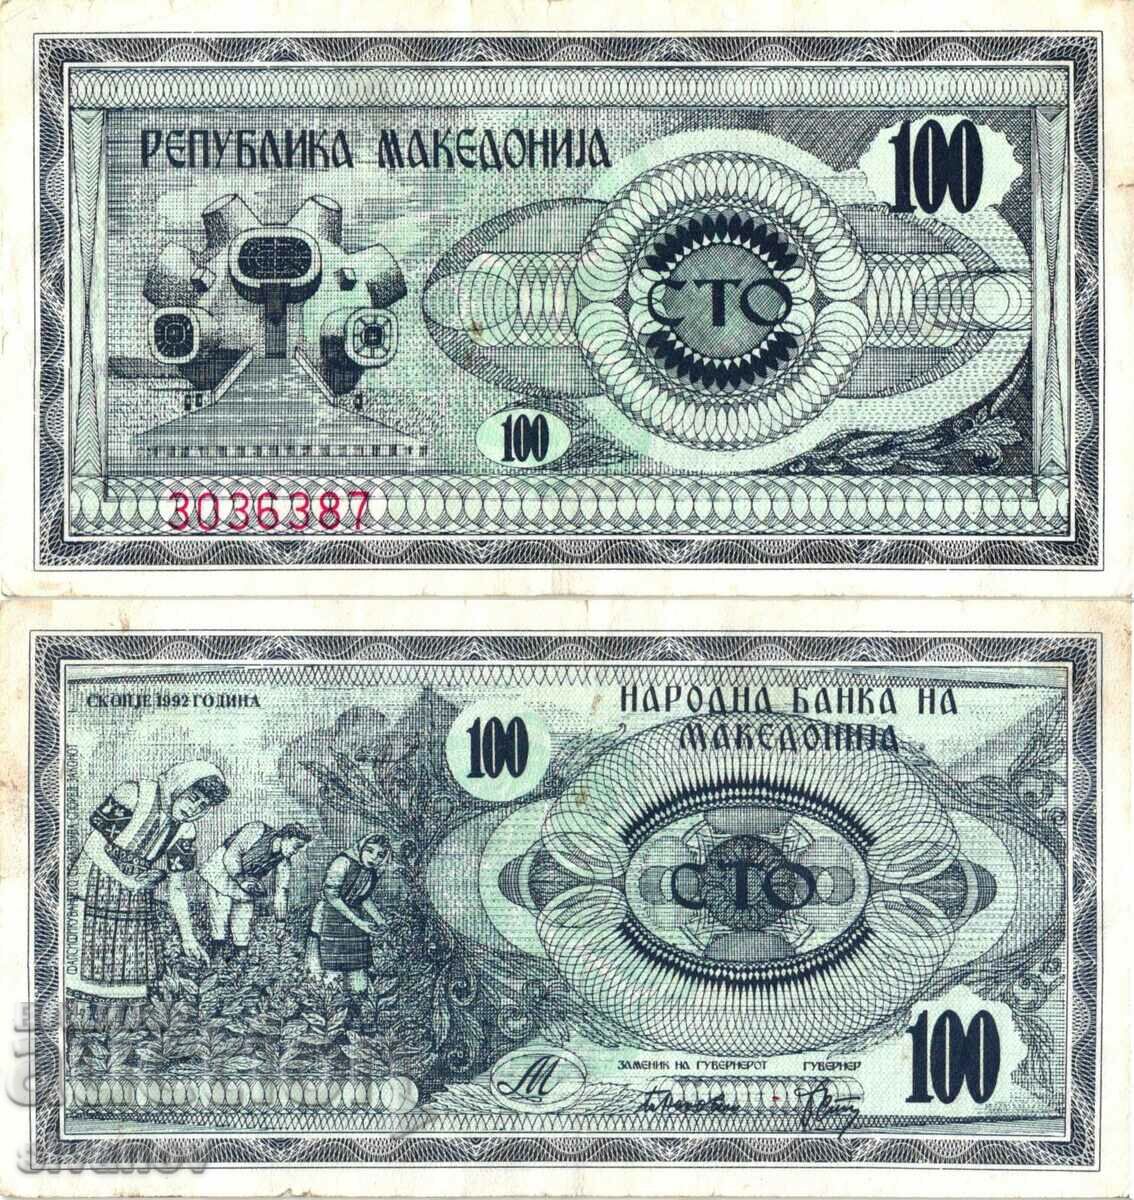 Μακεδονία 100 denar 1992 #4280